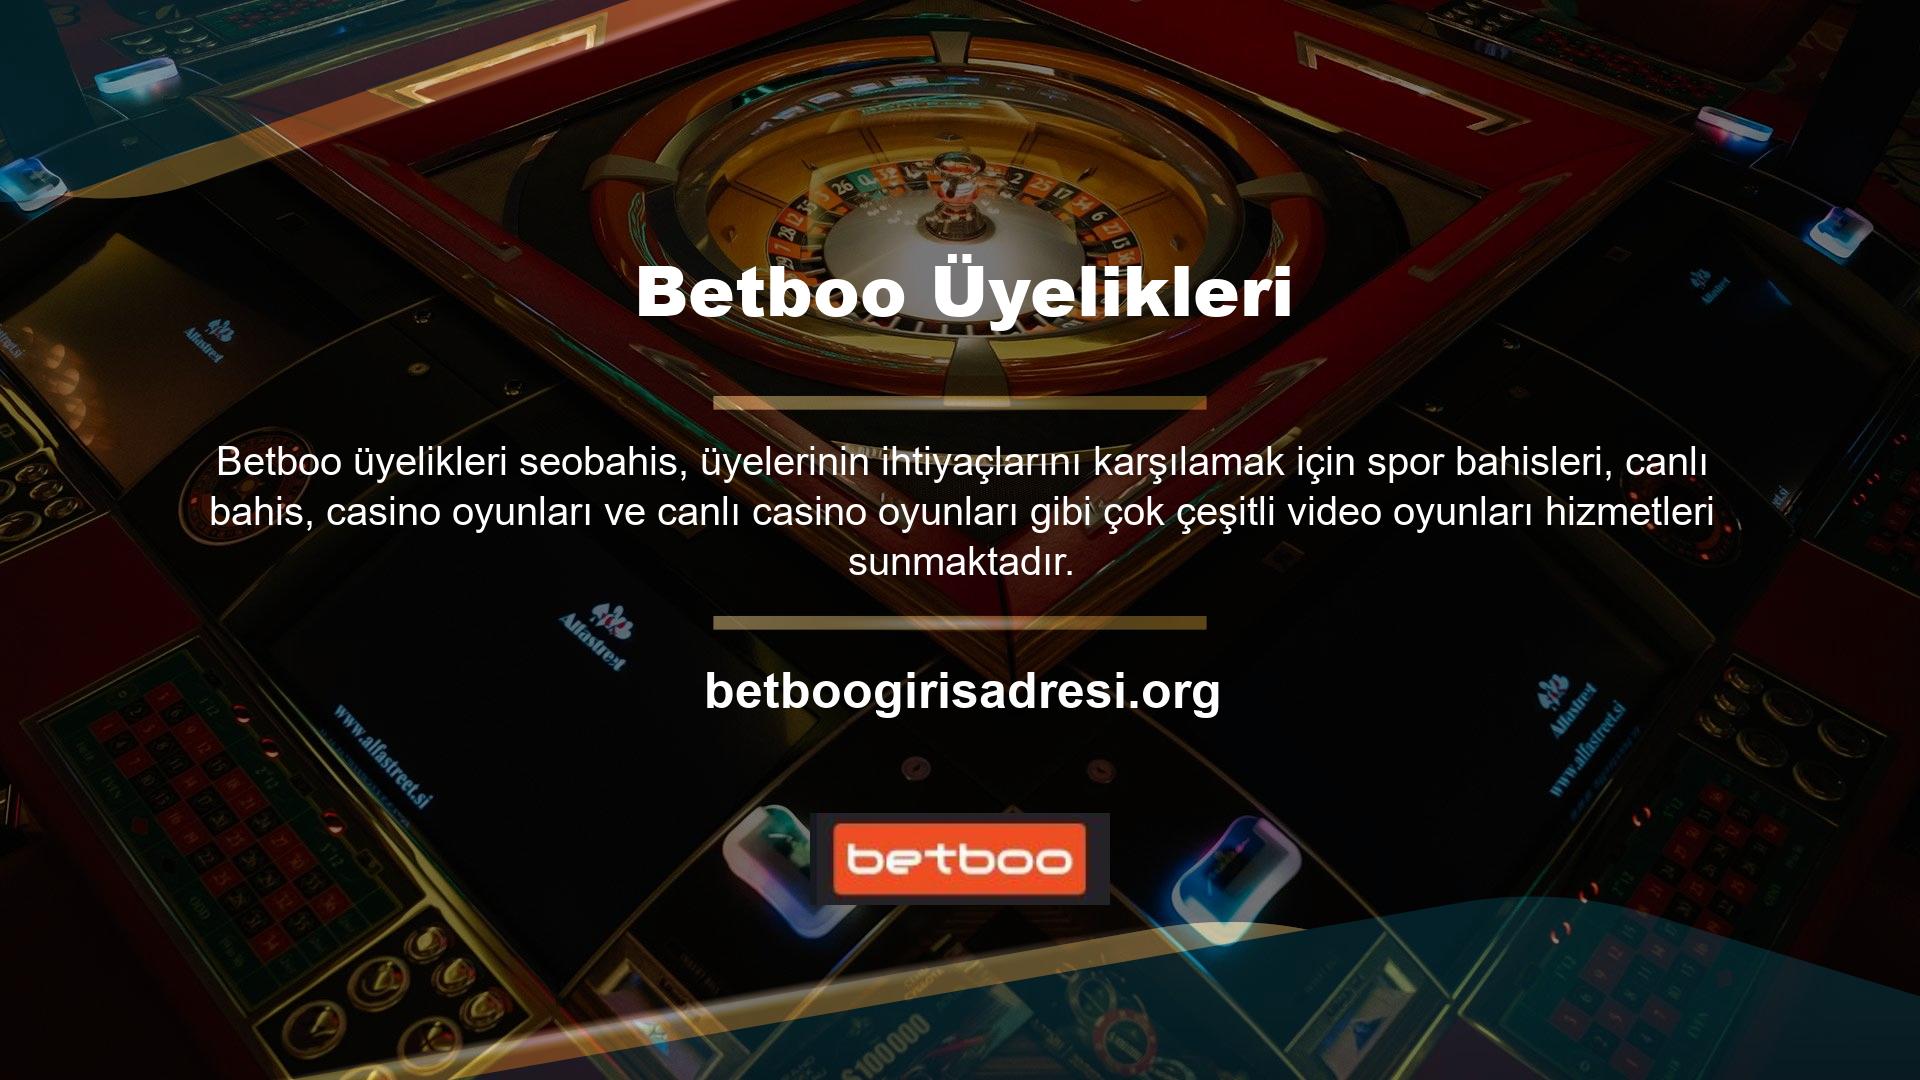 Betboo bu sitedeki video oyunu kullanıcıları da rekabetçi programlardan etkileniyor ve onlardan çok para kazanabiliyorlar